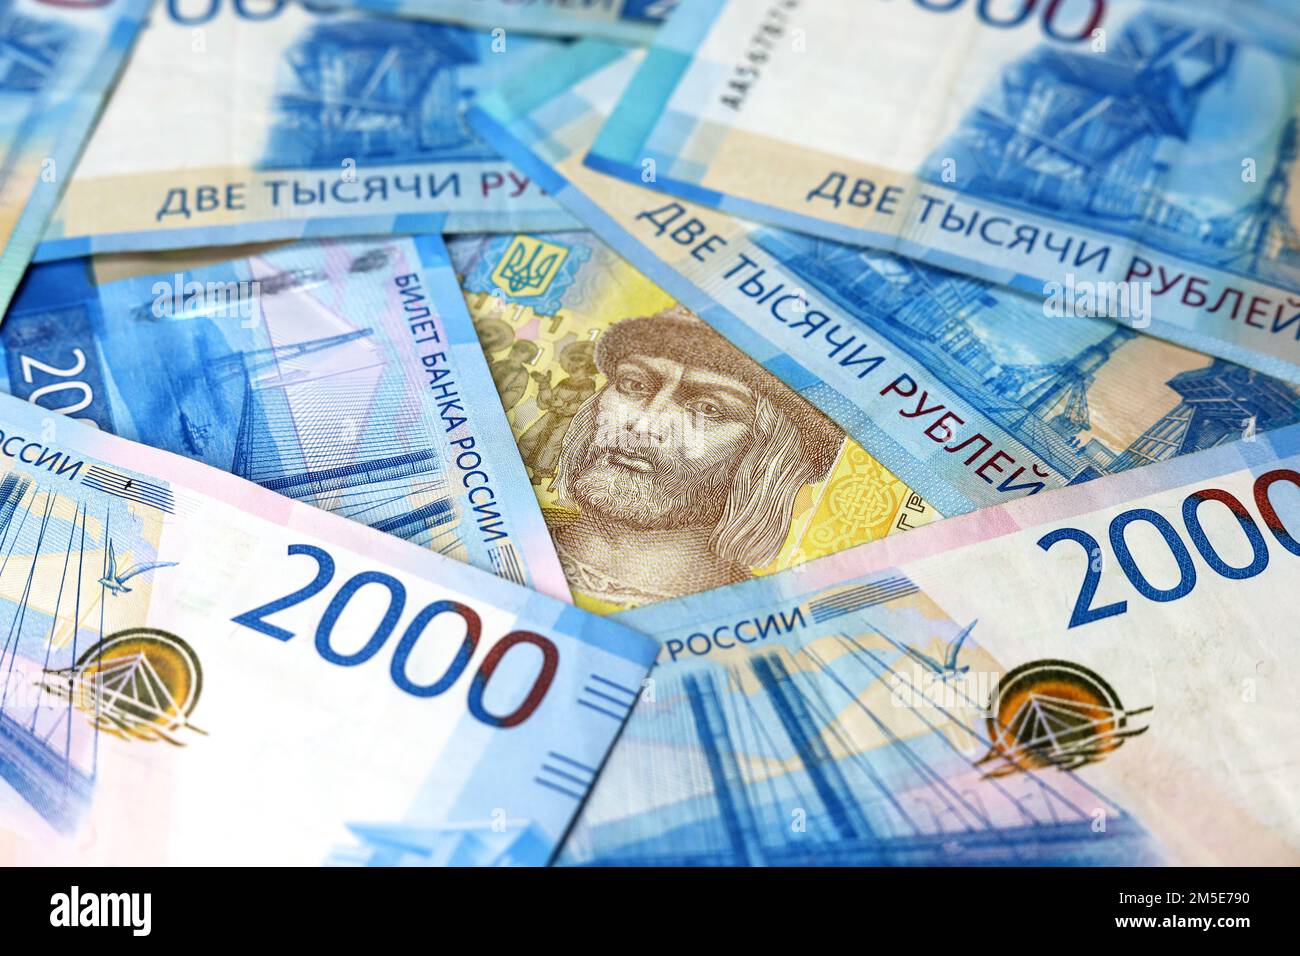 Irivnia Ucraina circondata da rubli russi. Concetto di economia dell'Ucraina durante l'operazione militare speciale della Russia Foto Stock